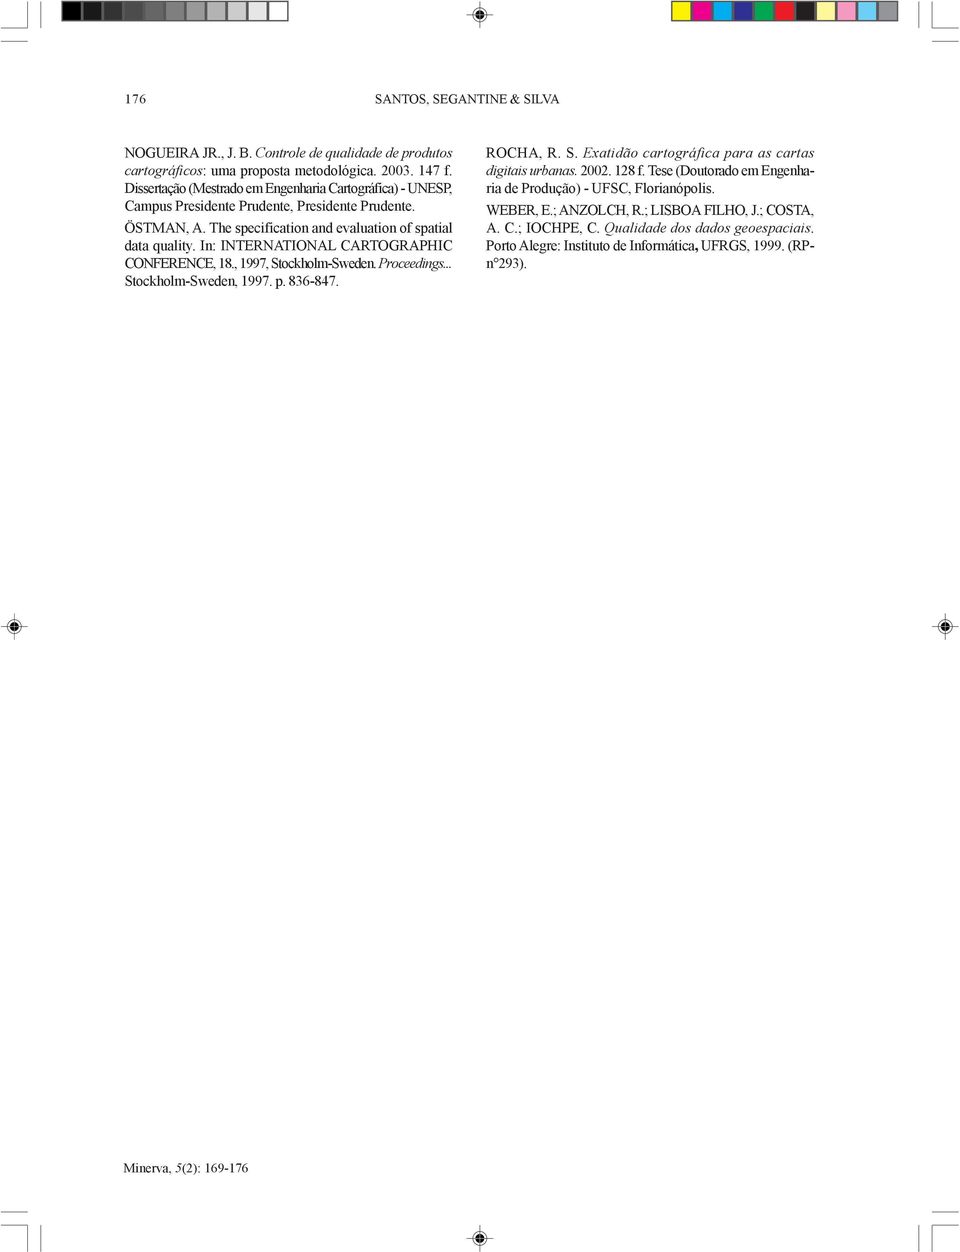 In: INTERNATIONAL CARTOGRAPHIC CONFERENCE, 18., 1997, Stockholm-Sweden. Proceedings... Stockholm-Sweden, 1997. p. 836-847. ROCHA, R. S. Exatidão cartográfica para as cartas digitais urbanas.